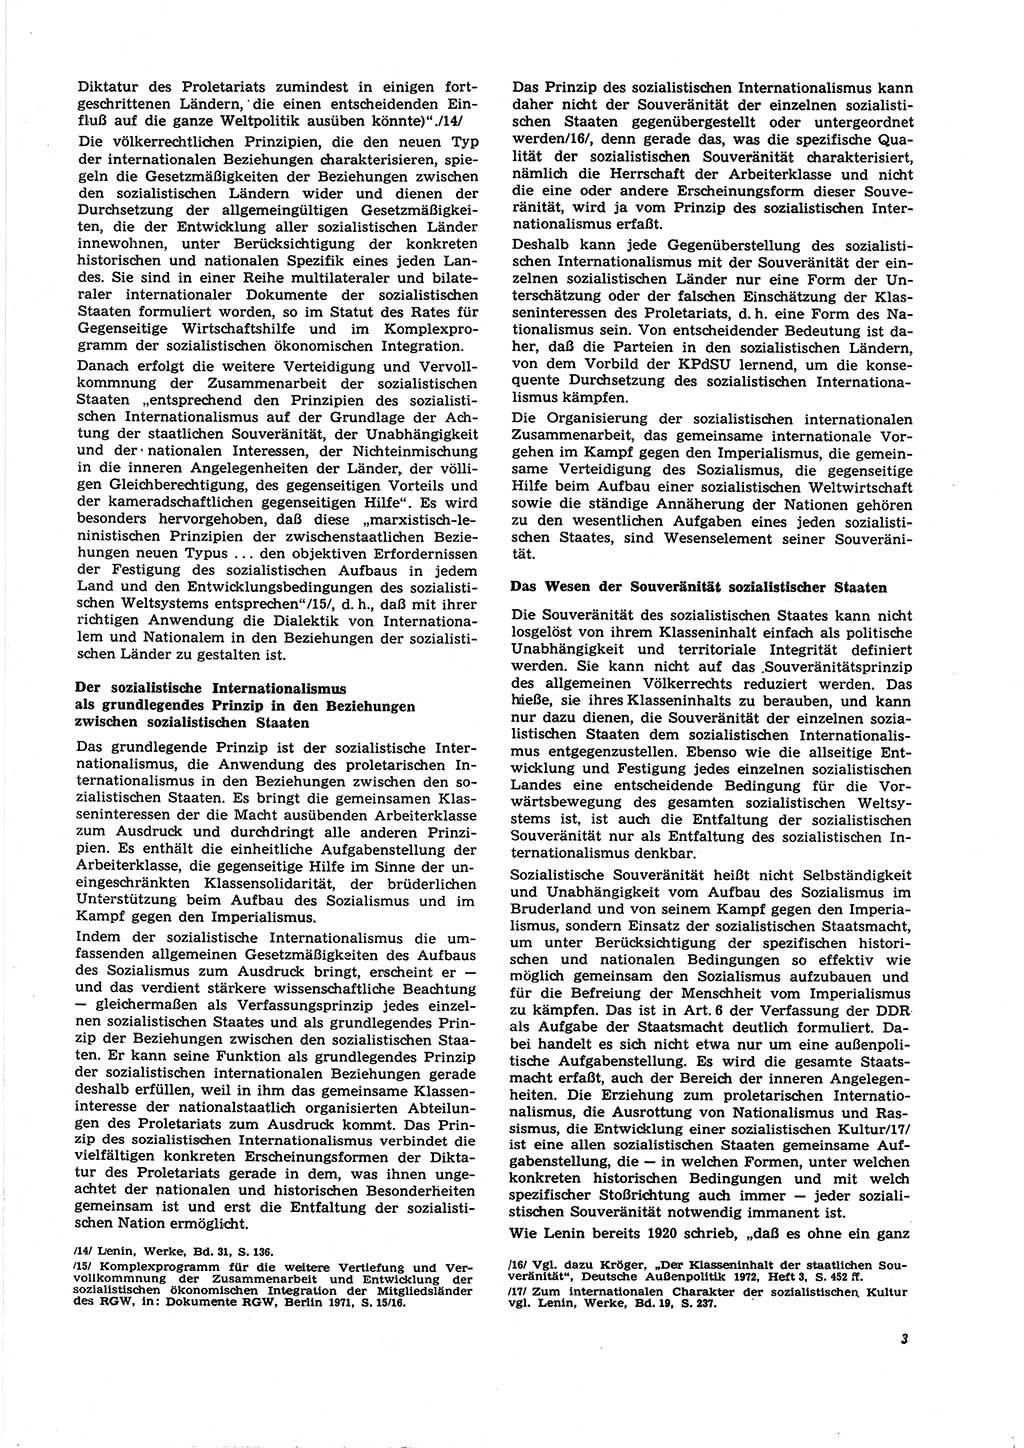 Neue Justiz (NJ), Zeitschrift für Recht und Rechtswissenschaft [Deutsche Demokratische Republik (DDR)], 27. Jahrgang 1973, Seite 3 (NJ DDR 1973, S. 3)